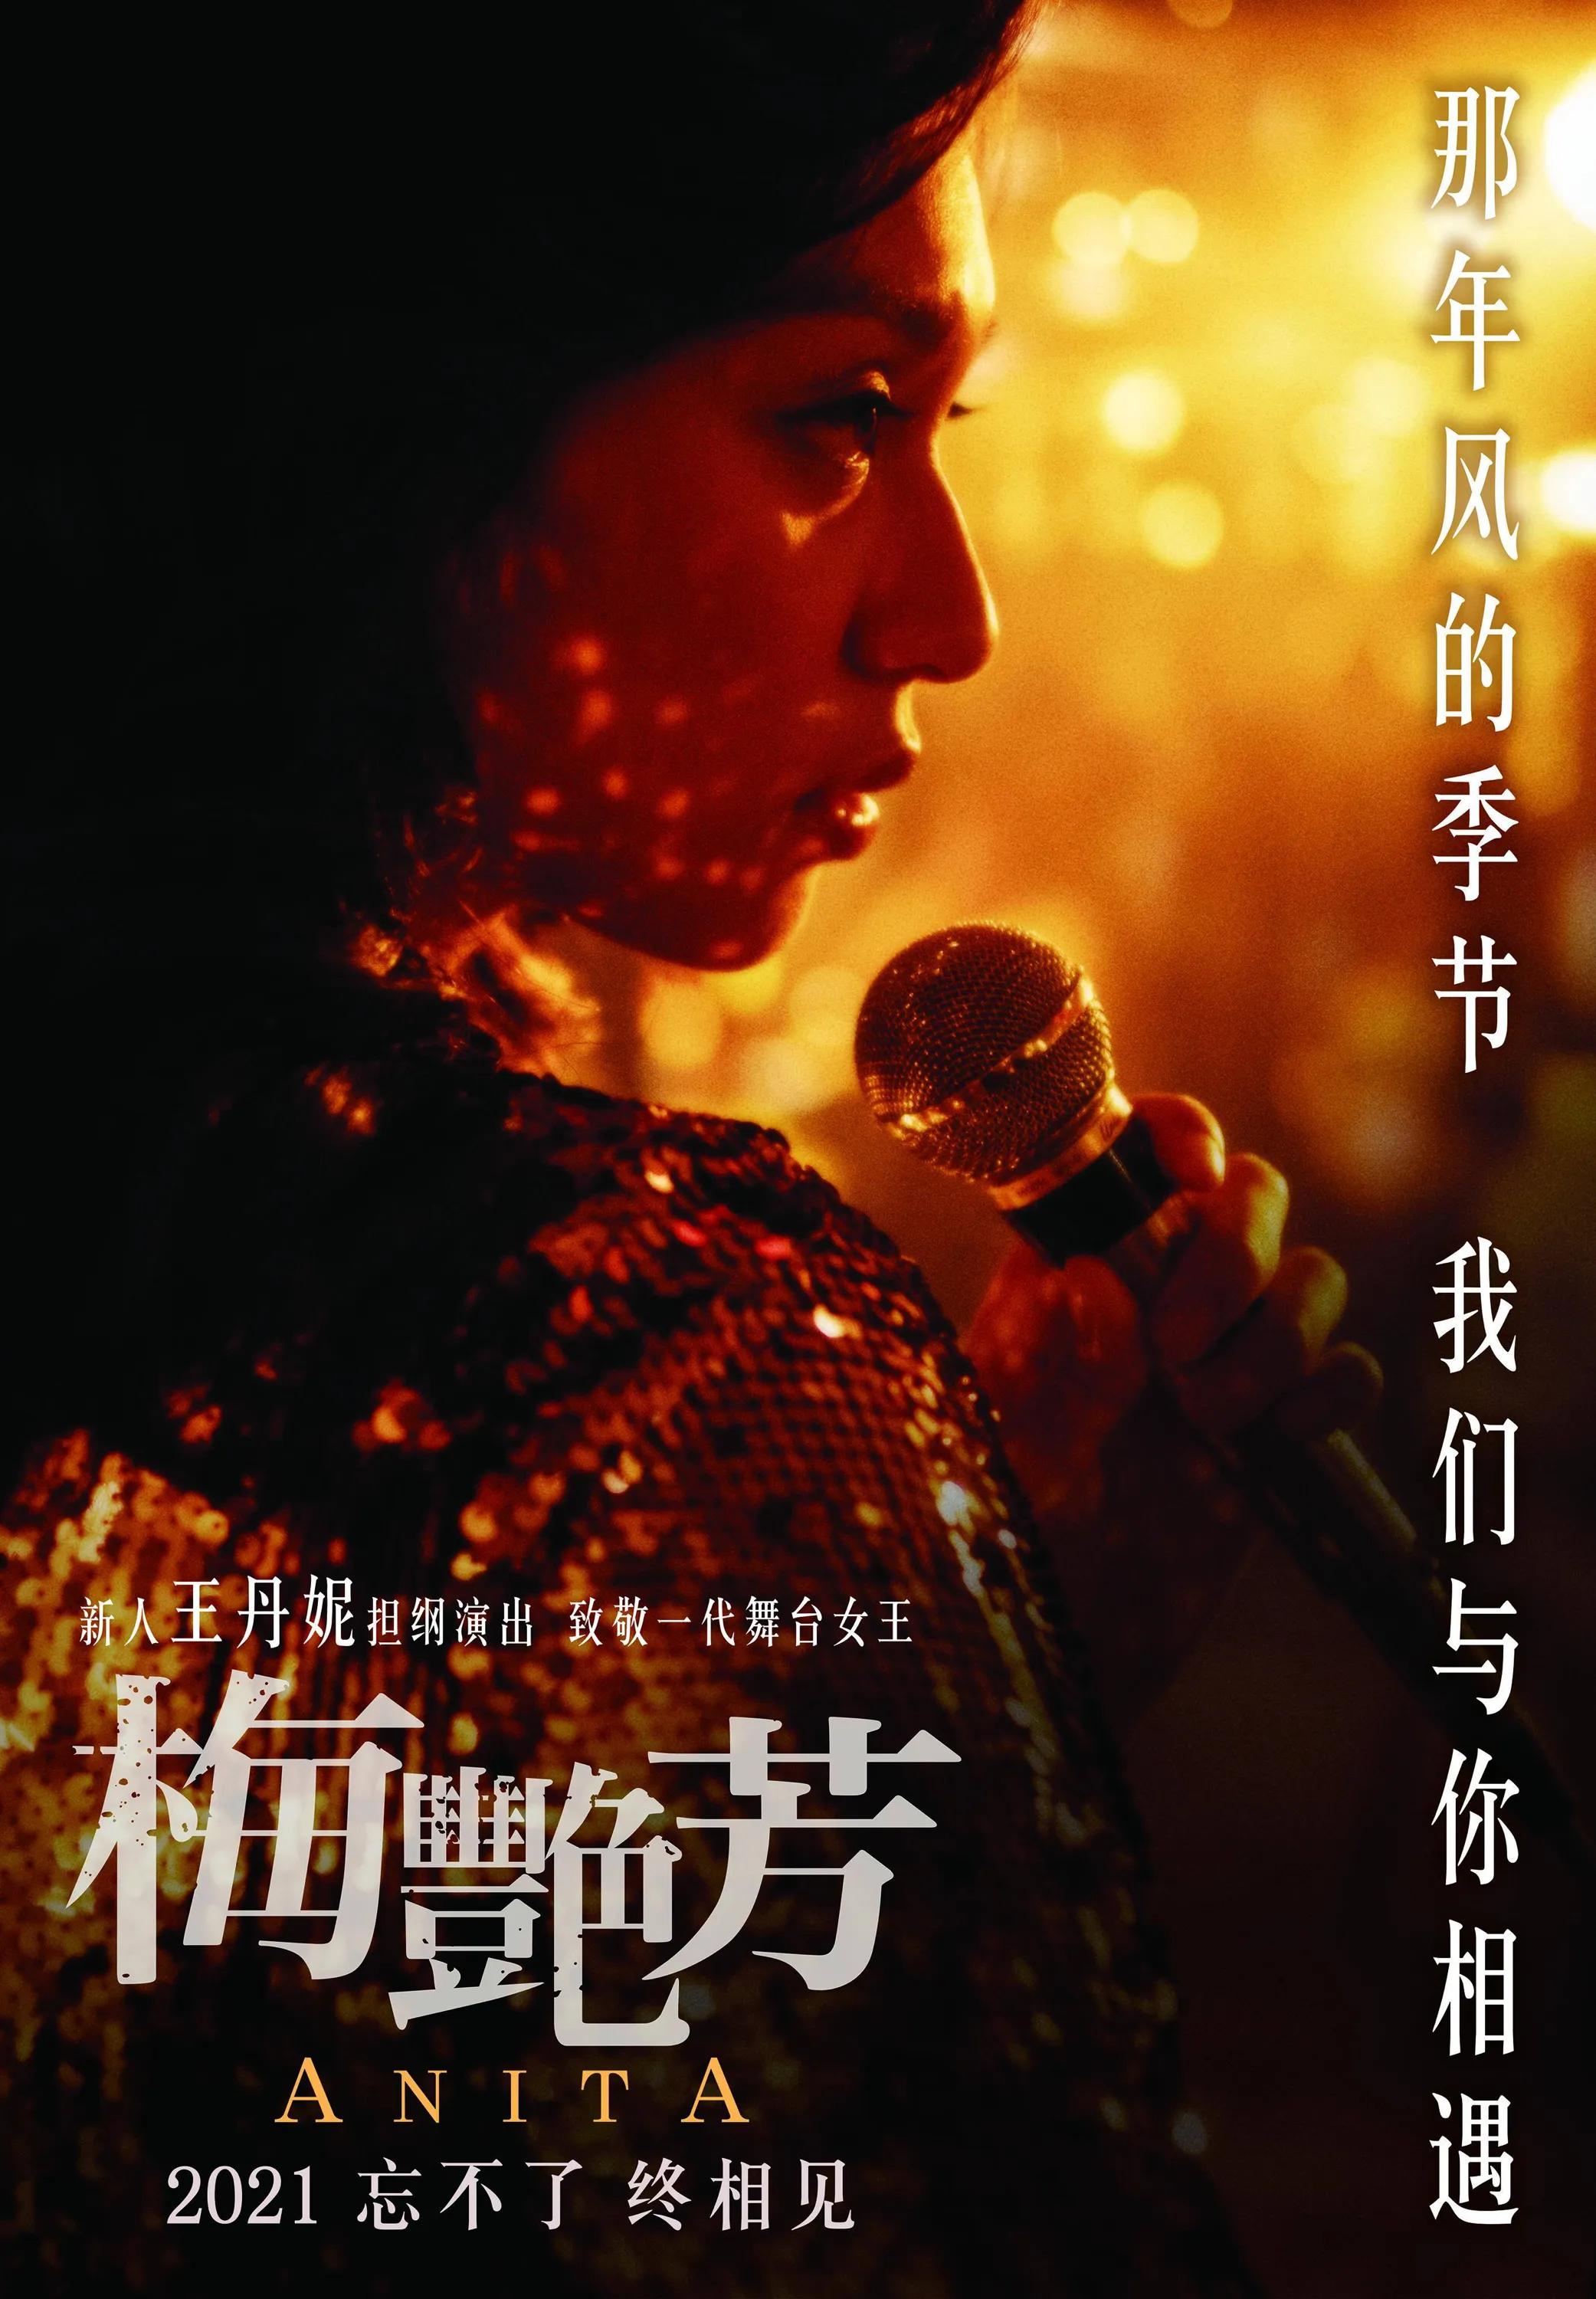 香港的女儿《梅艳芳》2021.11.12上映了